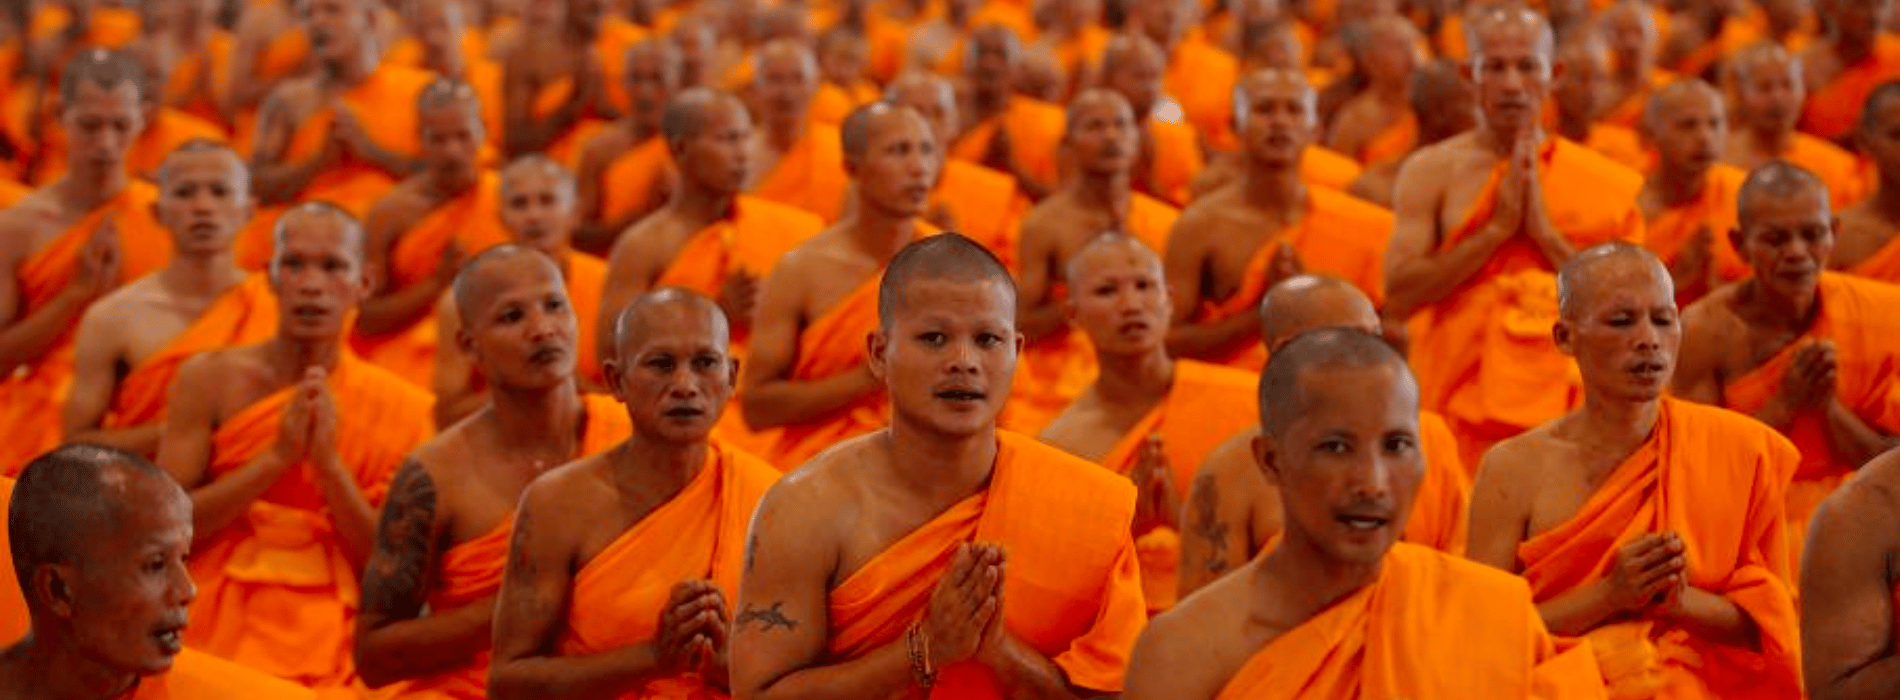 Gleichheit und Einheitlichkeit im Buddhismus